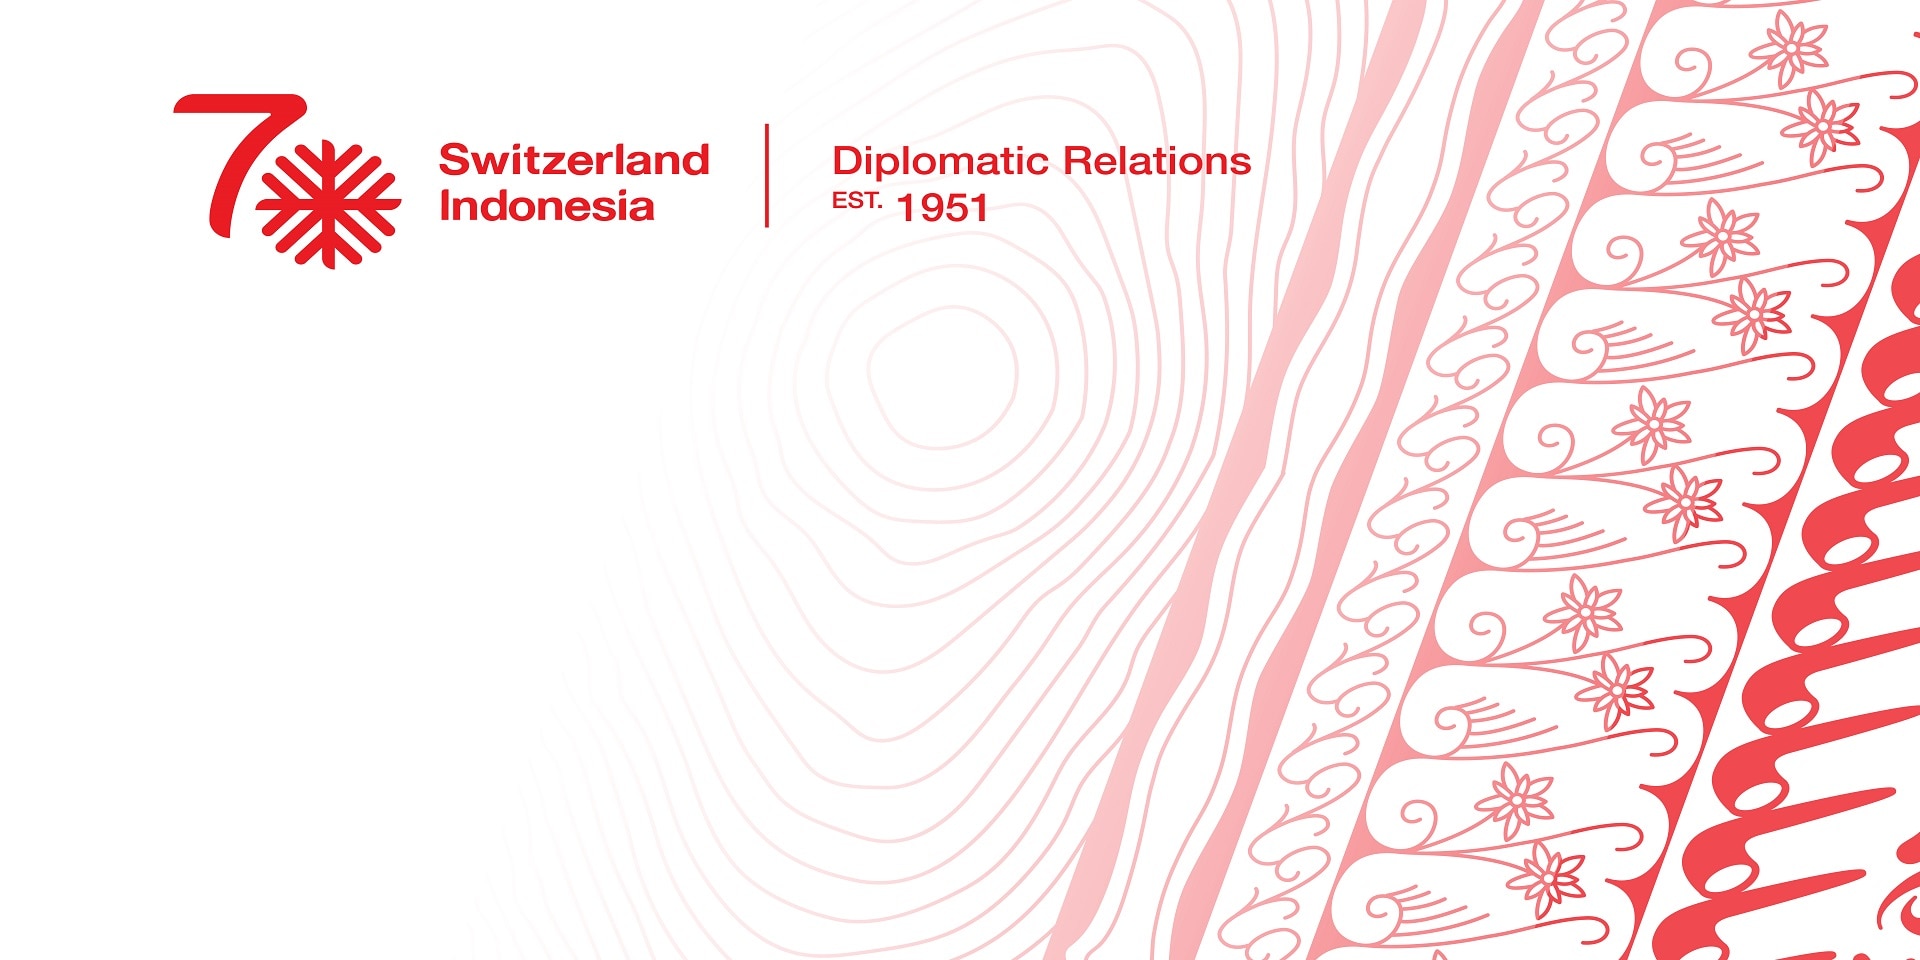 Le logo utilisé pour le 70e anniversaire des relations diplomatiques combine des symboles suisses et indonésiens et évoque l’amitié entre les deux pays. 